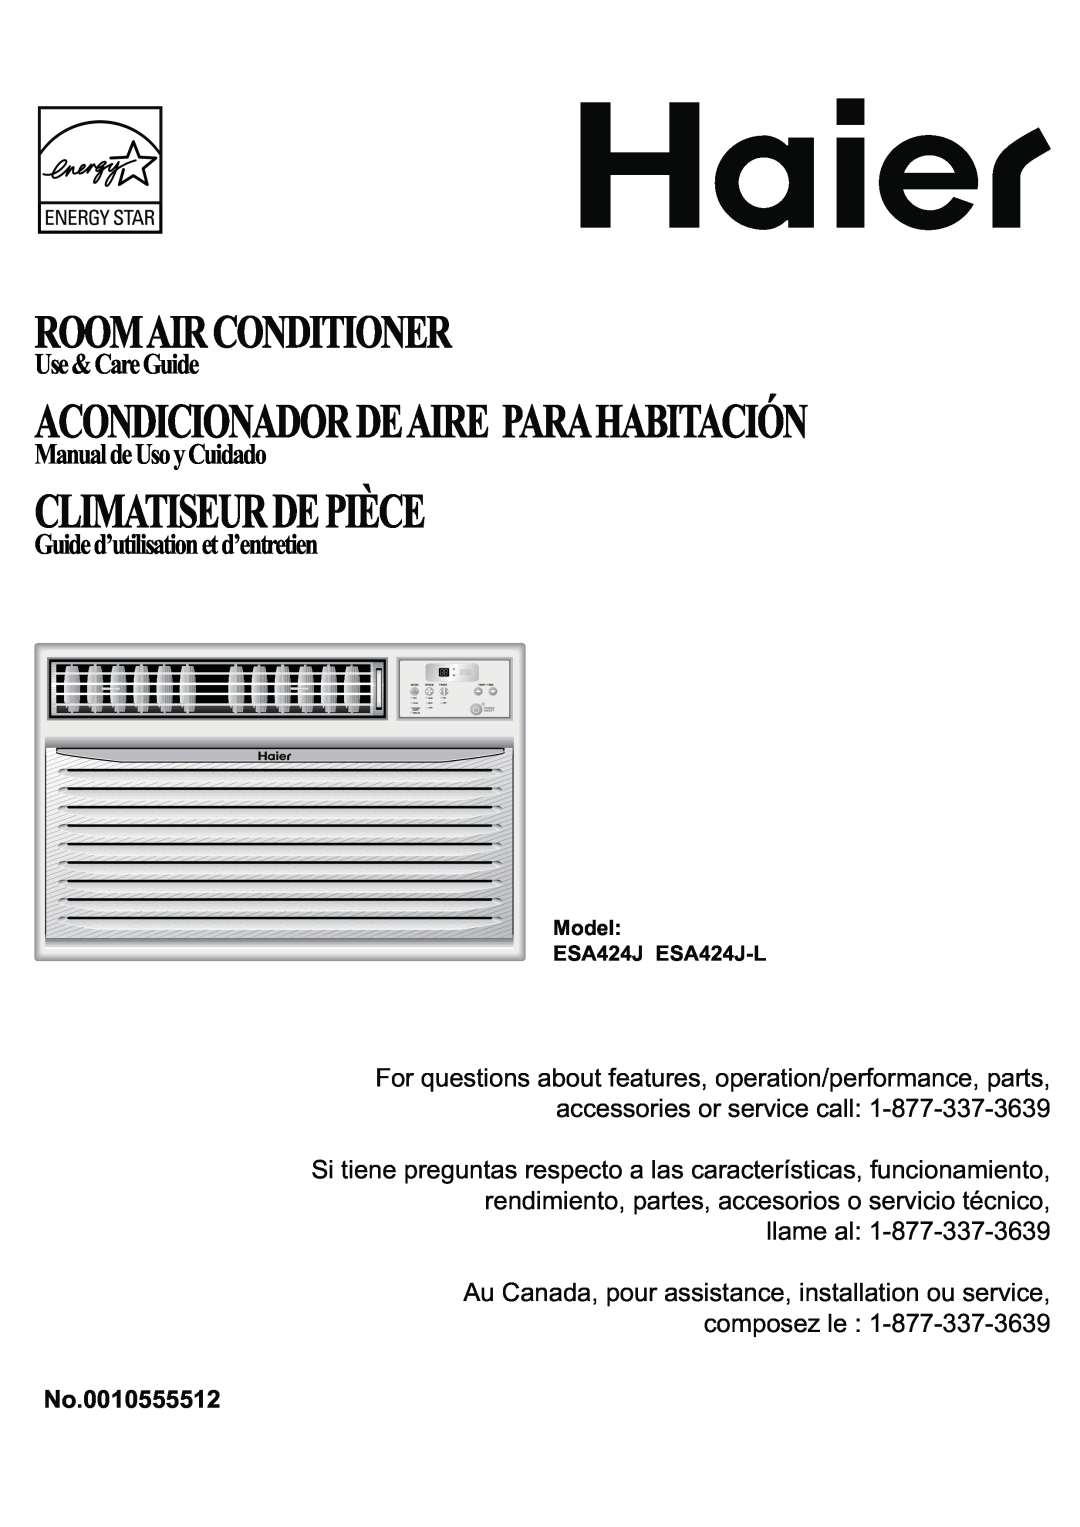 Haier ESA424J-L manual Climatiseurdepièce, Roomairconditioner, Acondicionadordeaire Parahabitación, Use&CareGuide 